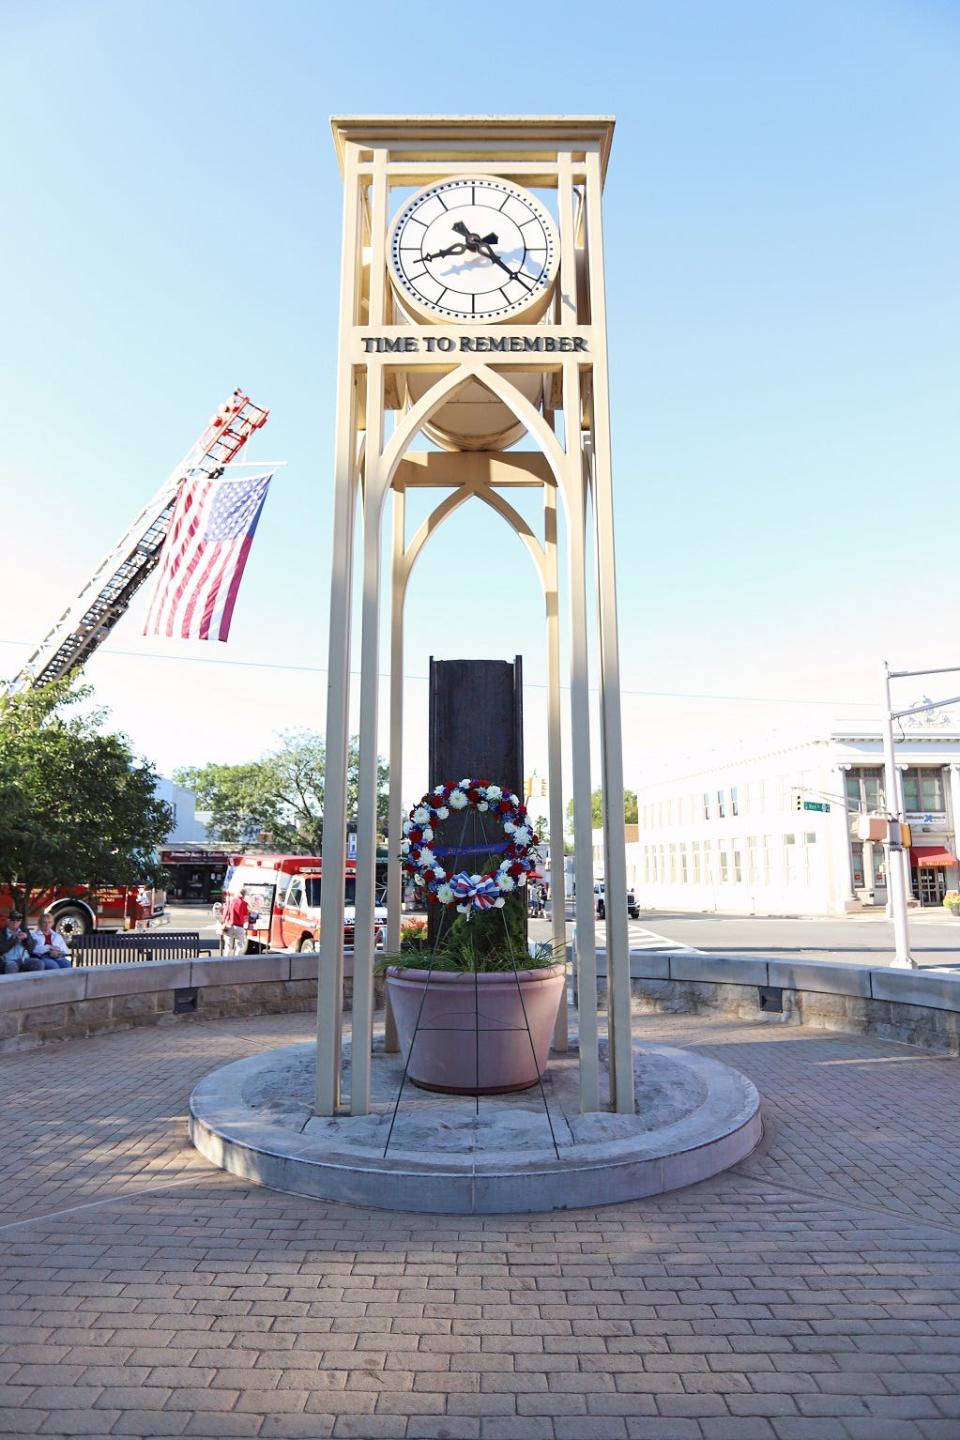 Somerset County's Memorial Clock Tower in Somerville